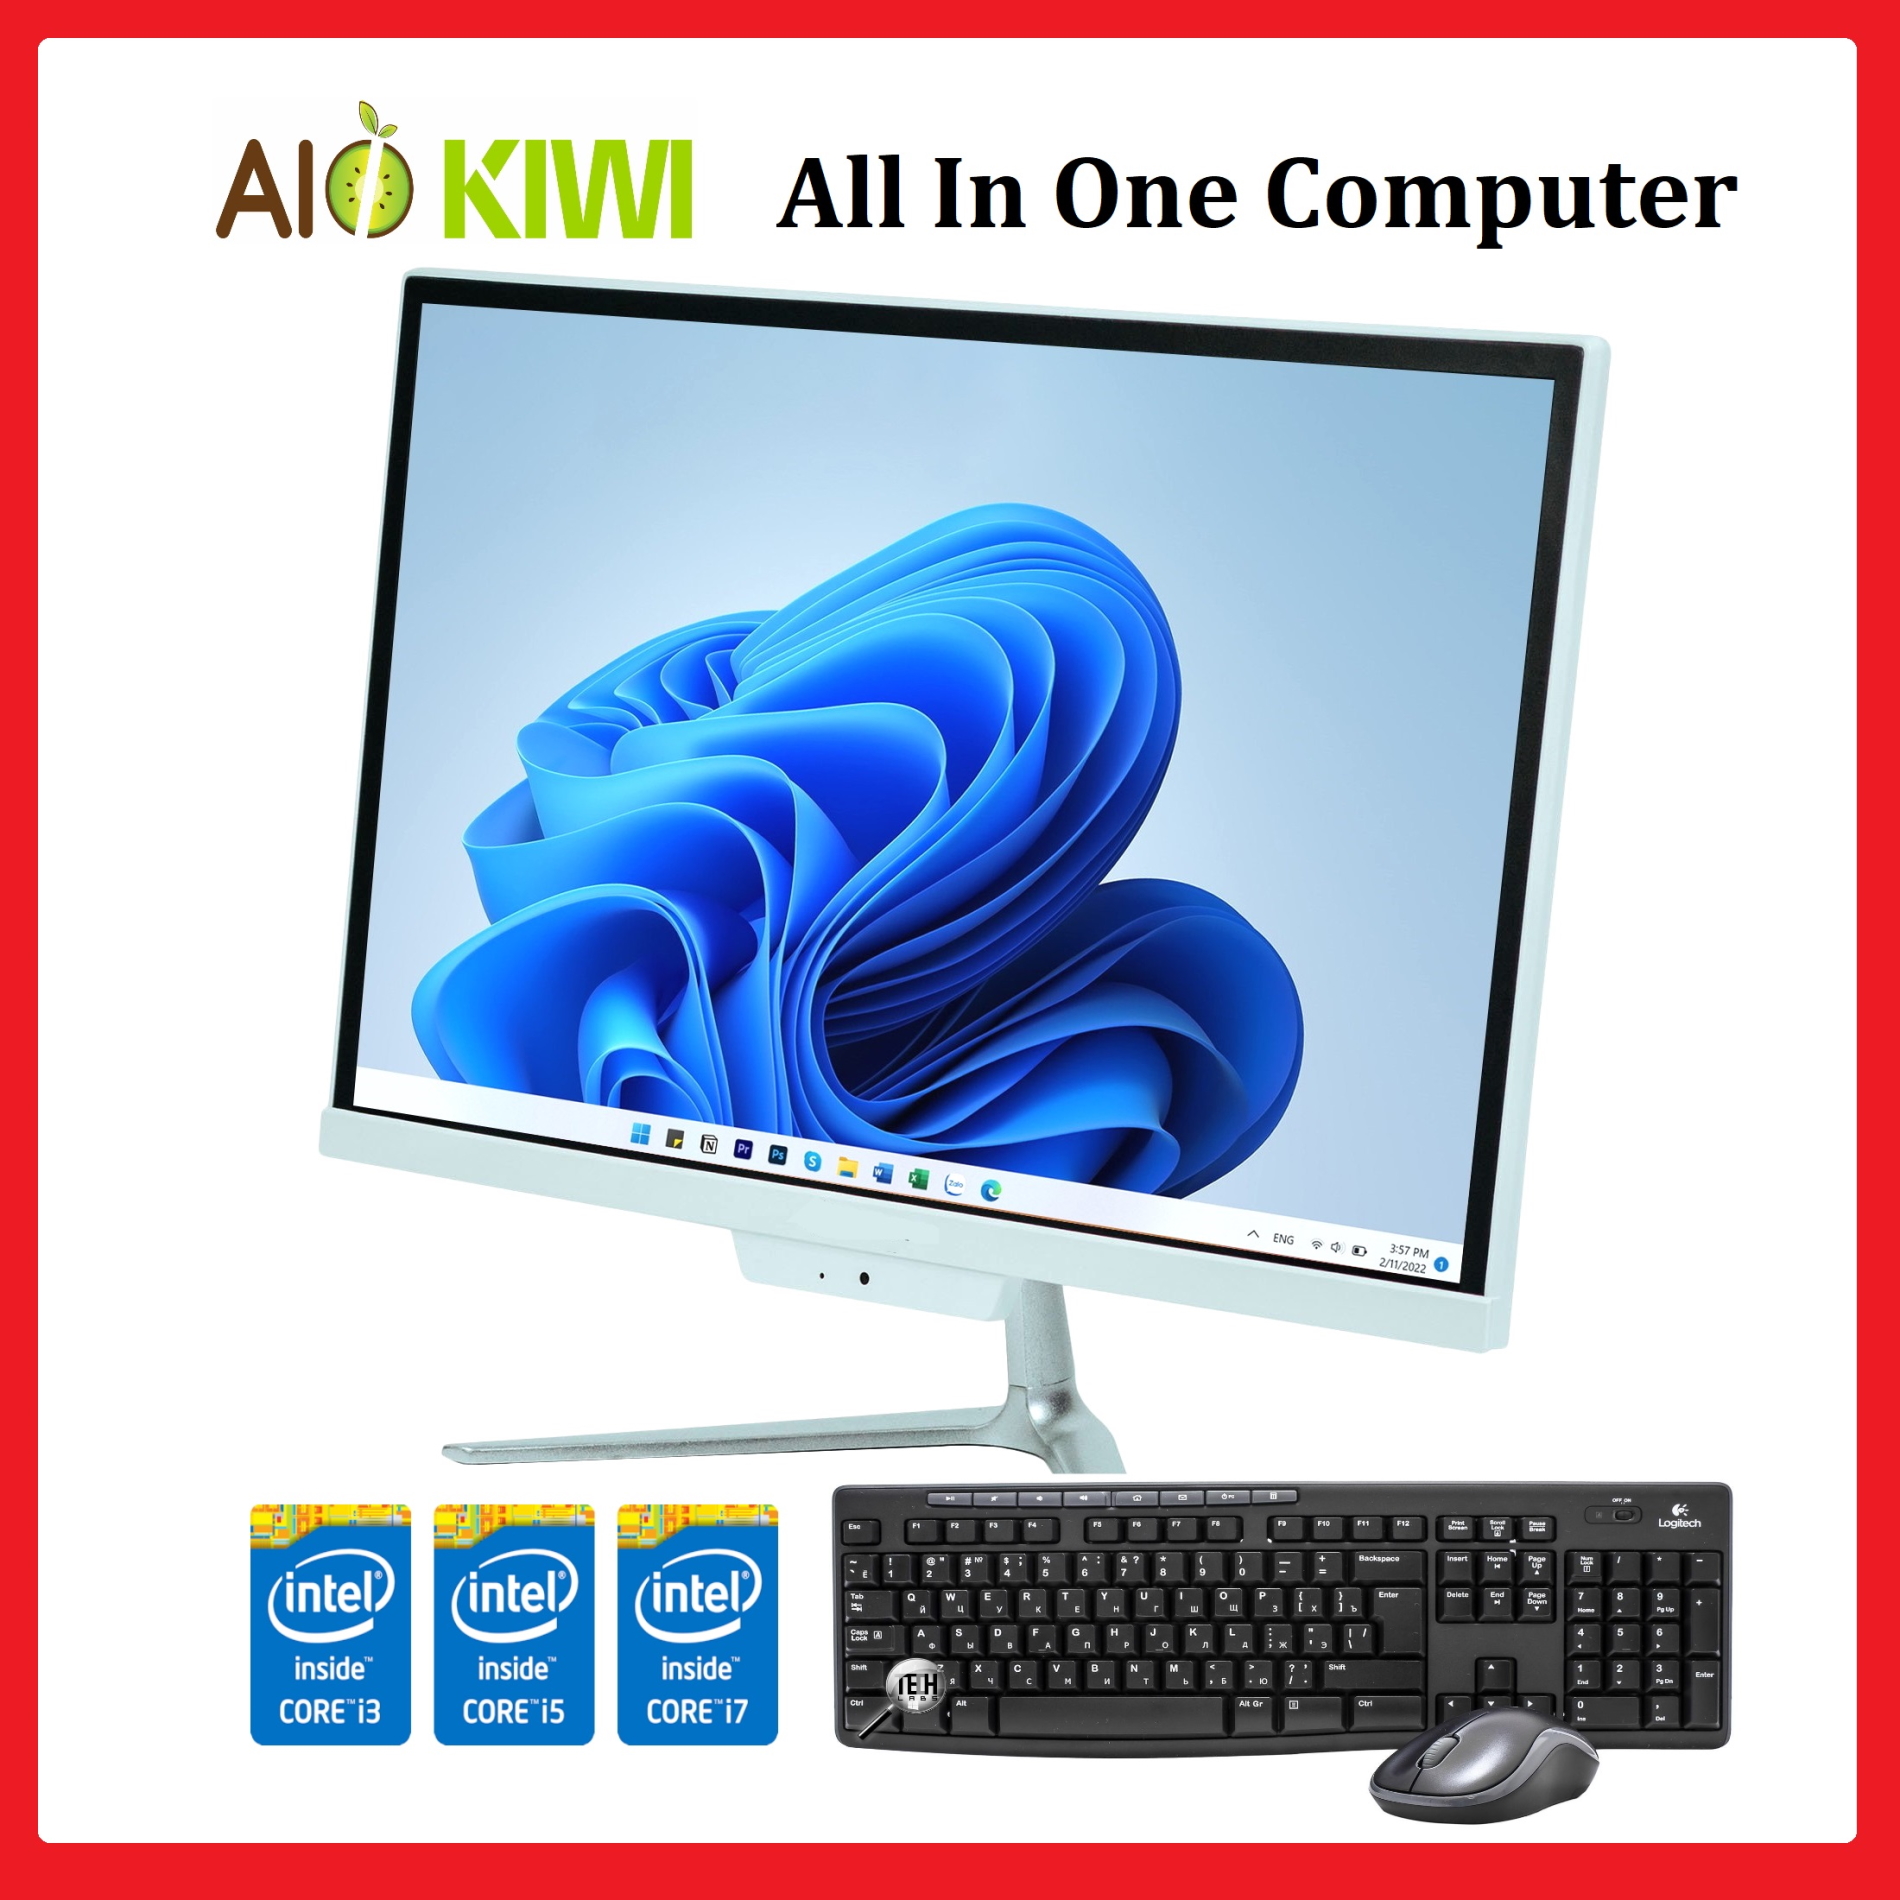 Máy tính PC All in one, AIO KIWI 19P (Core i3 3220, Ram 8G, SSD 240G, 19 inch), máy tính trong màn hình.